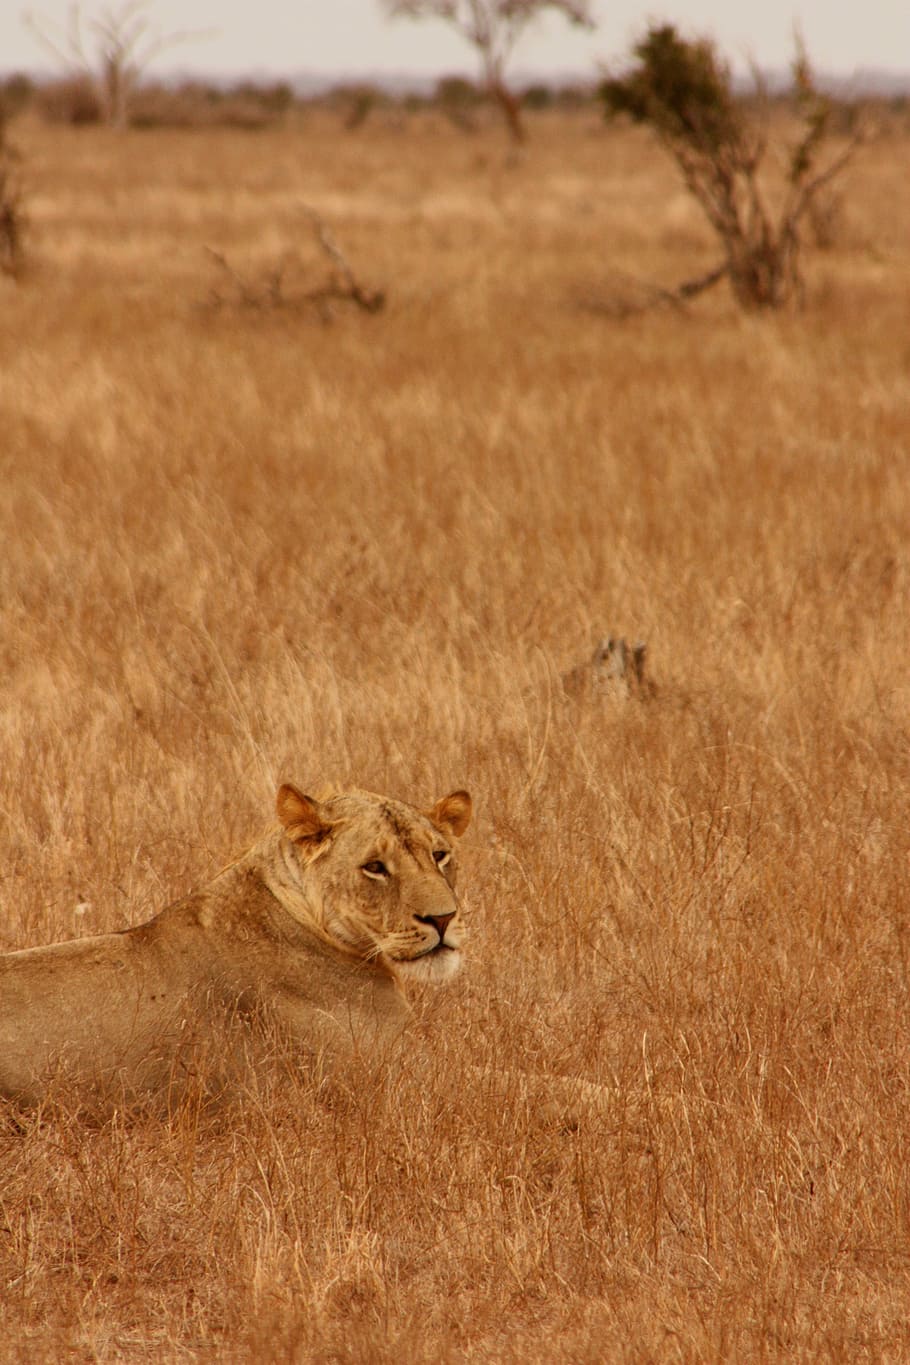 león, animal, familia, salvaje, mamífero, safari, África, viaje, Kenia, aventura